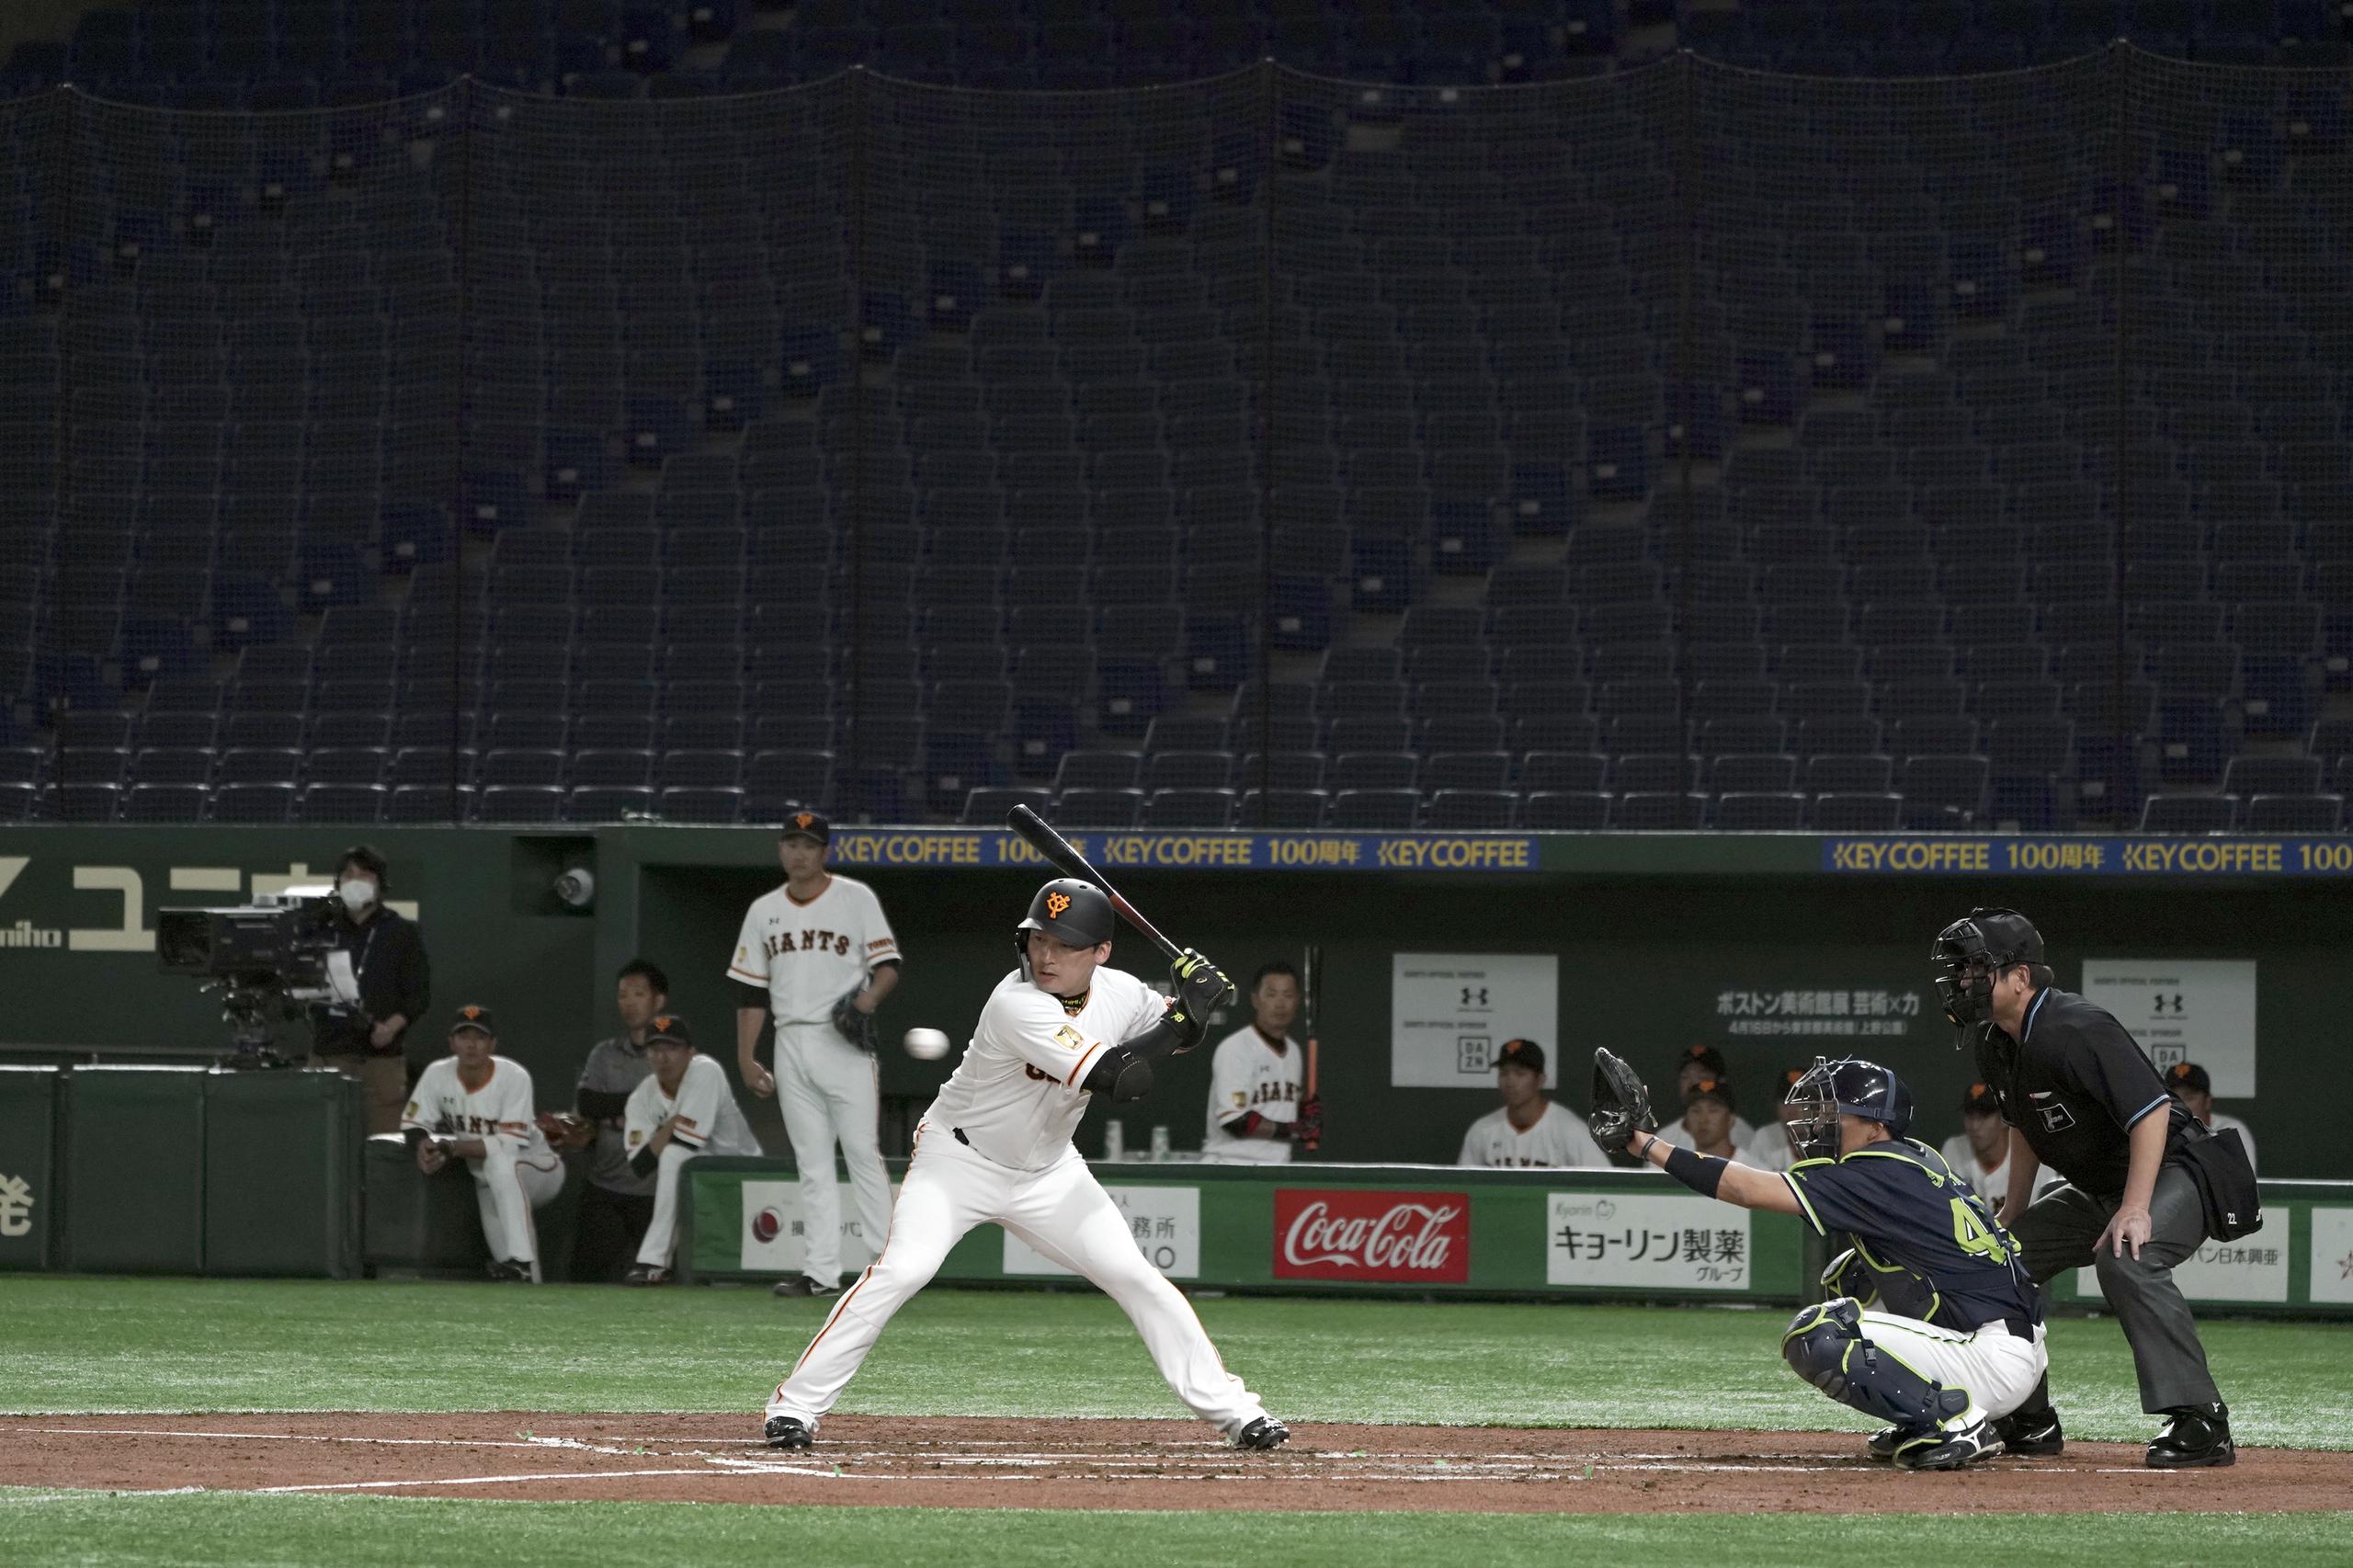 Esta imagen presenta un partido de pretemporada de los Yomiuri Giants ante los Yakult Swallows jugado sin público en el Tokyo Dome.